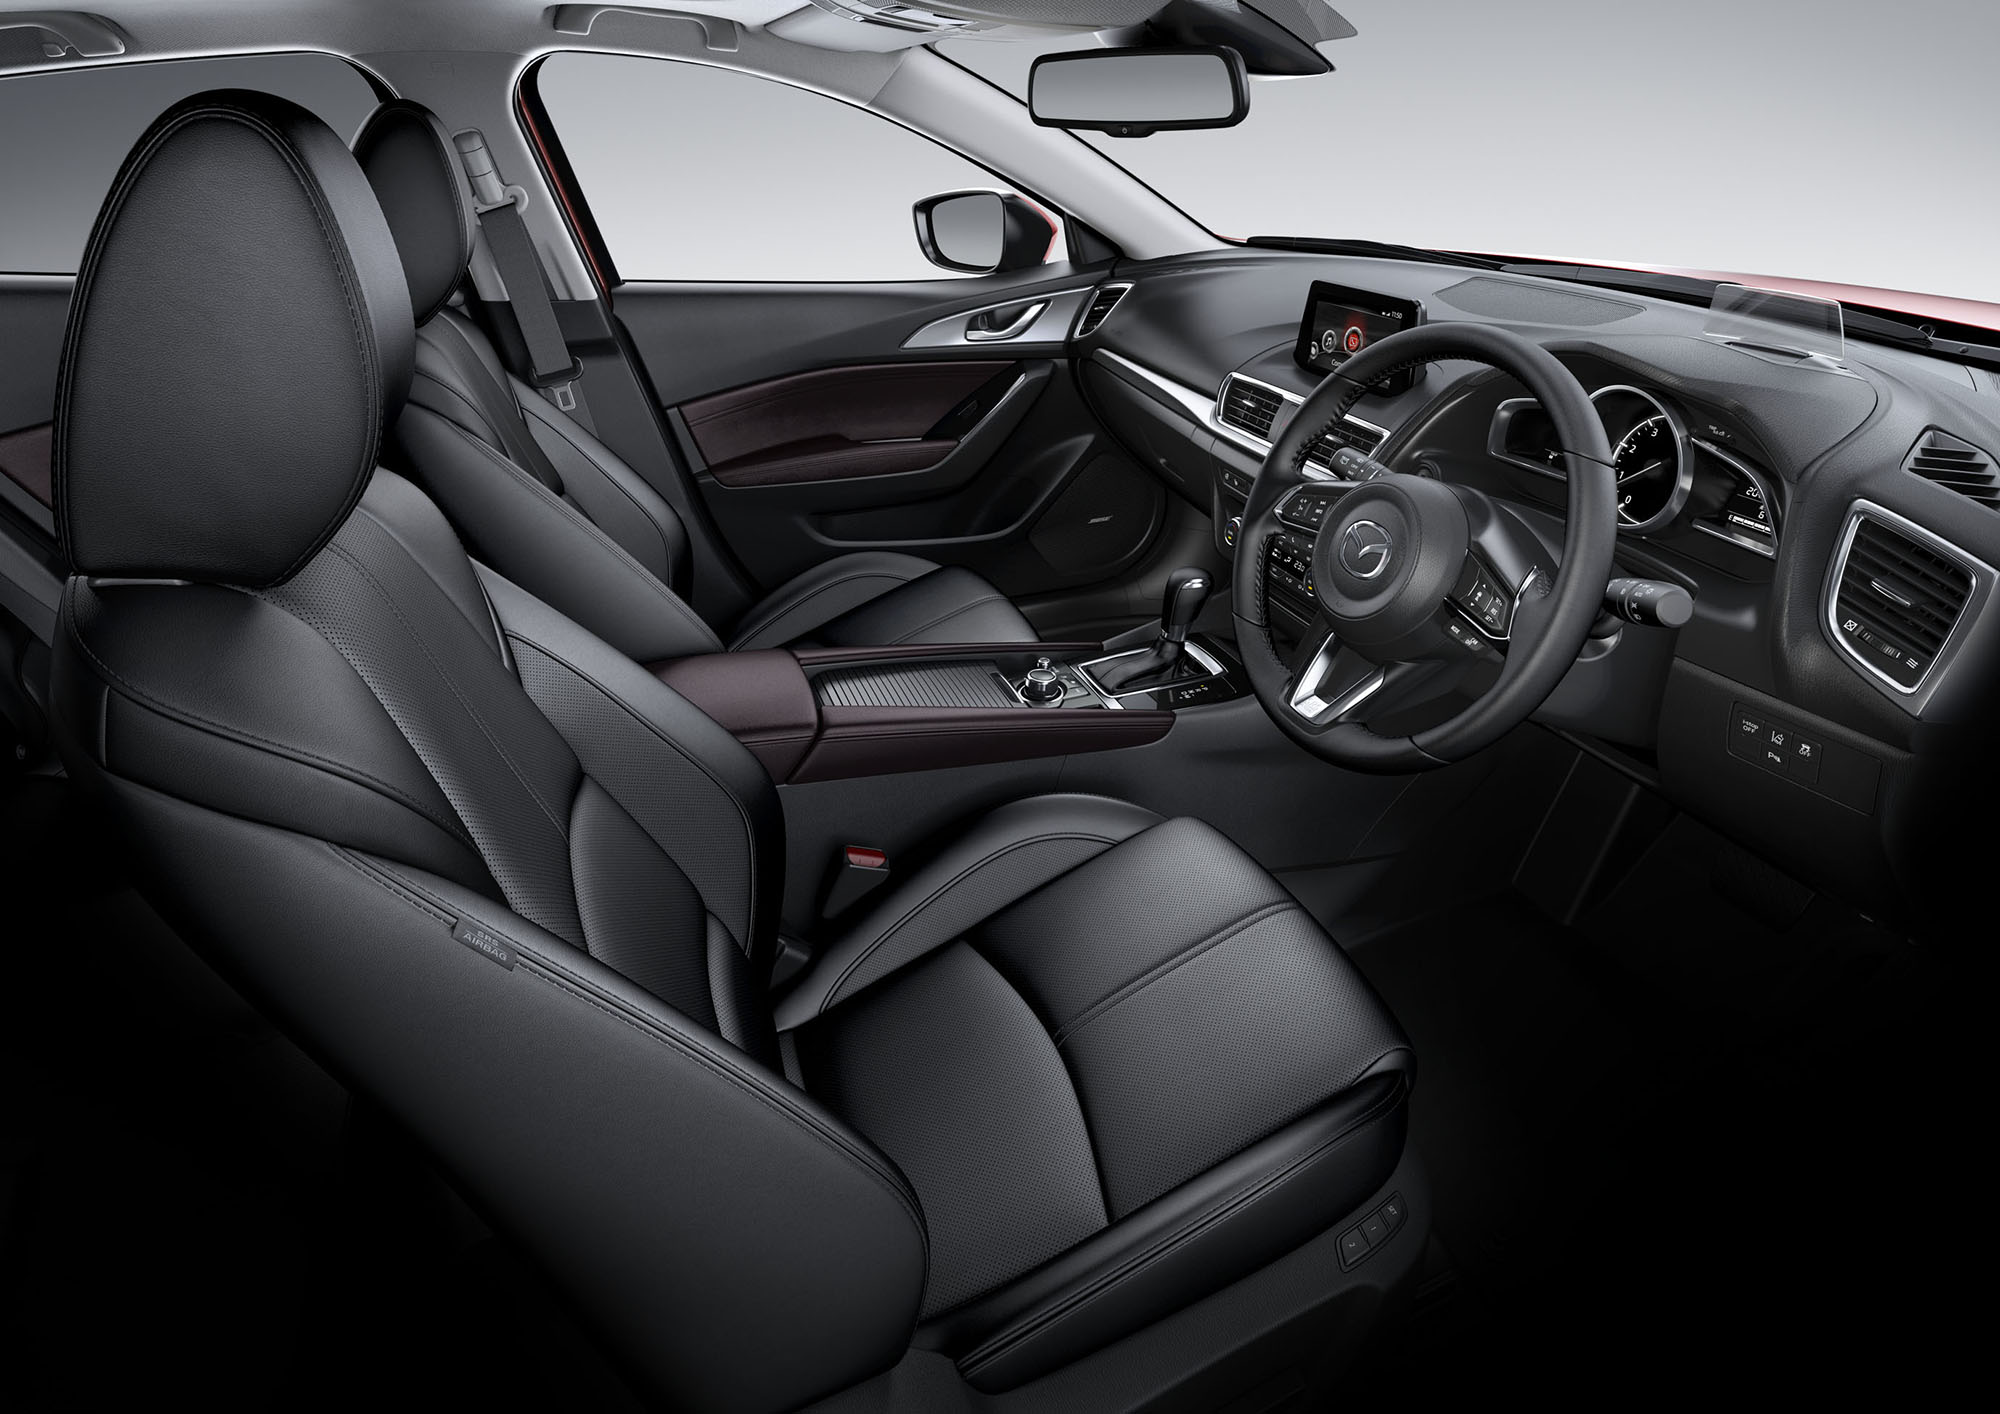 Bên trong Mazda3 có một số thay đổi ở tay lái với các đường nét sắc cạnh hơn, bảng điều khiển có thêm các đường trang trí bằng kim loại và vật liệu này cũng bắt gặp trên bậc cửa.